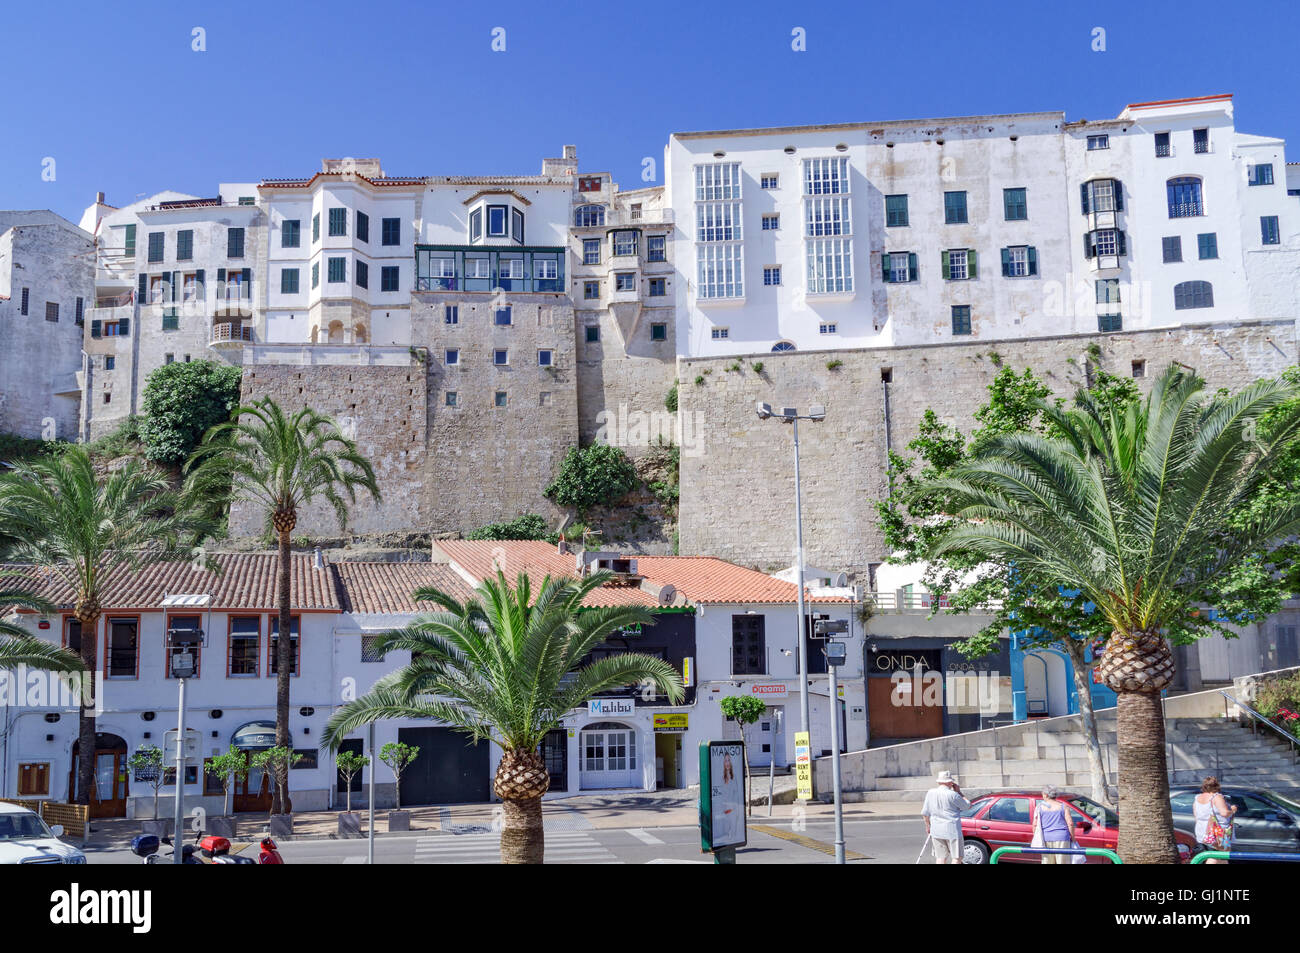 Die Straßen und Gassen der Hauptstadt Menorcas Mahón in Spanien. Die Häuser auf dem Hügel mit Blick auf das Hafengebiet. Stockfoto